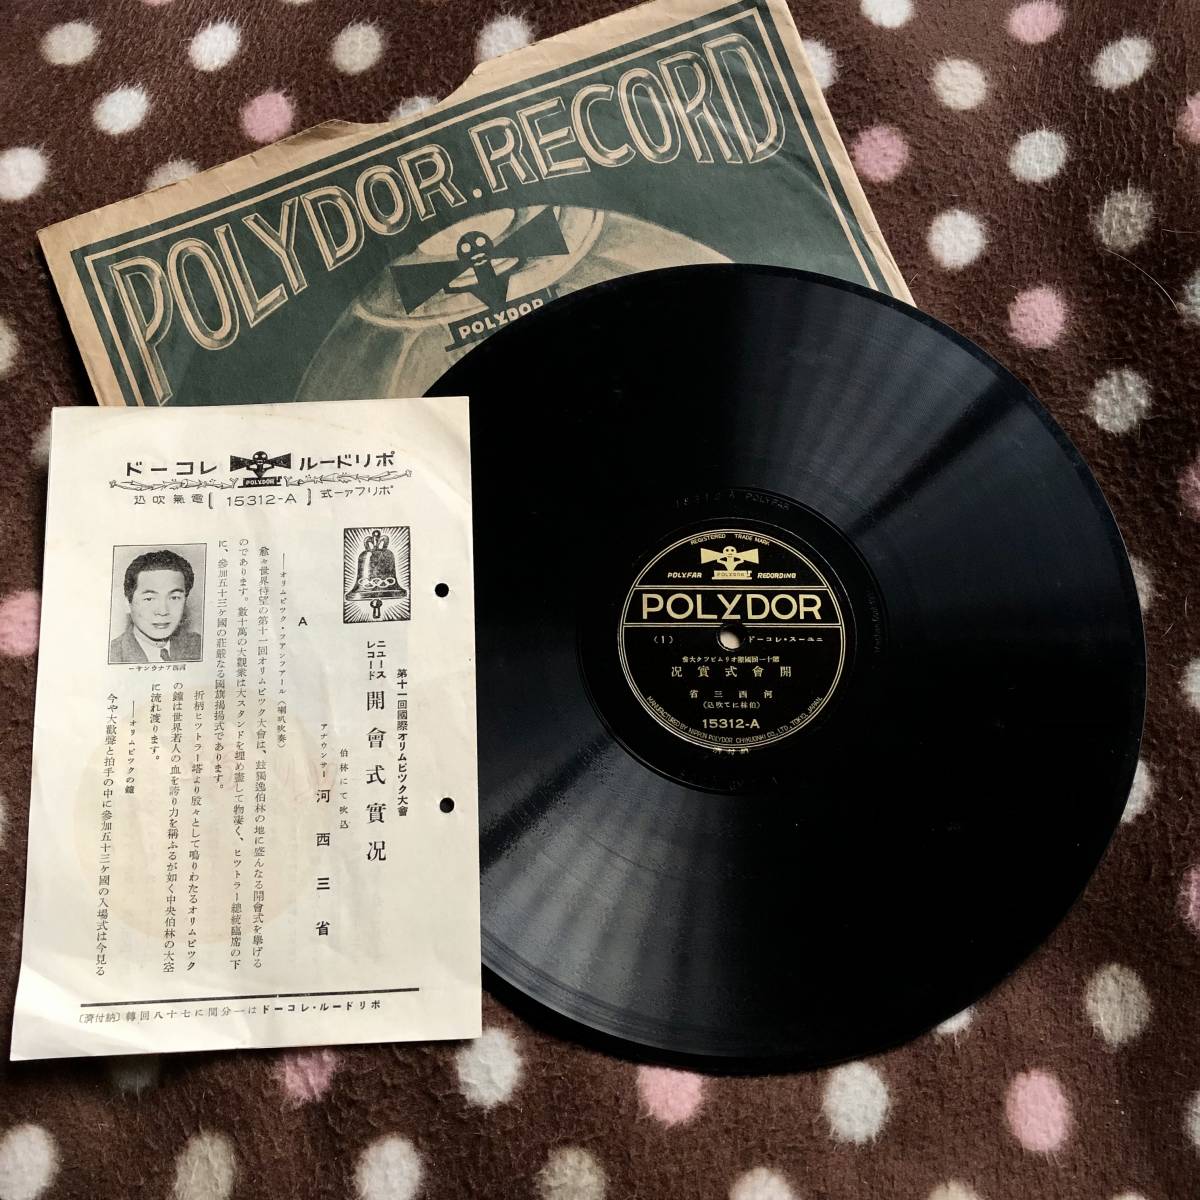 偉大な SP盤SPレコード ニュース・レコード 1936年伯林オリムピック